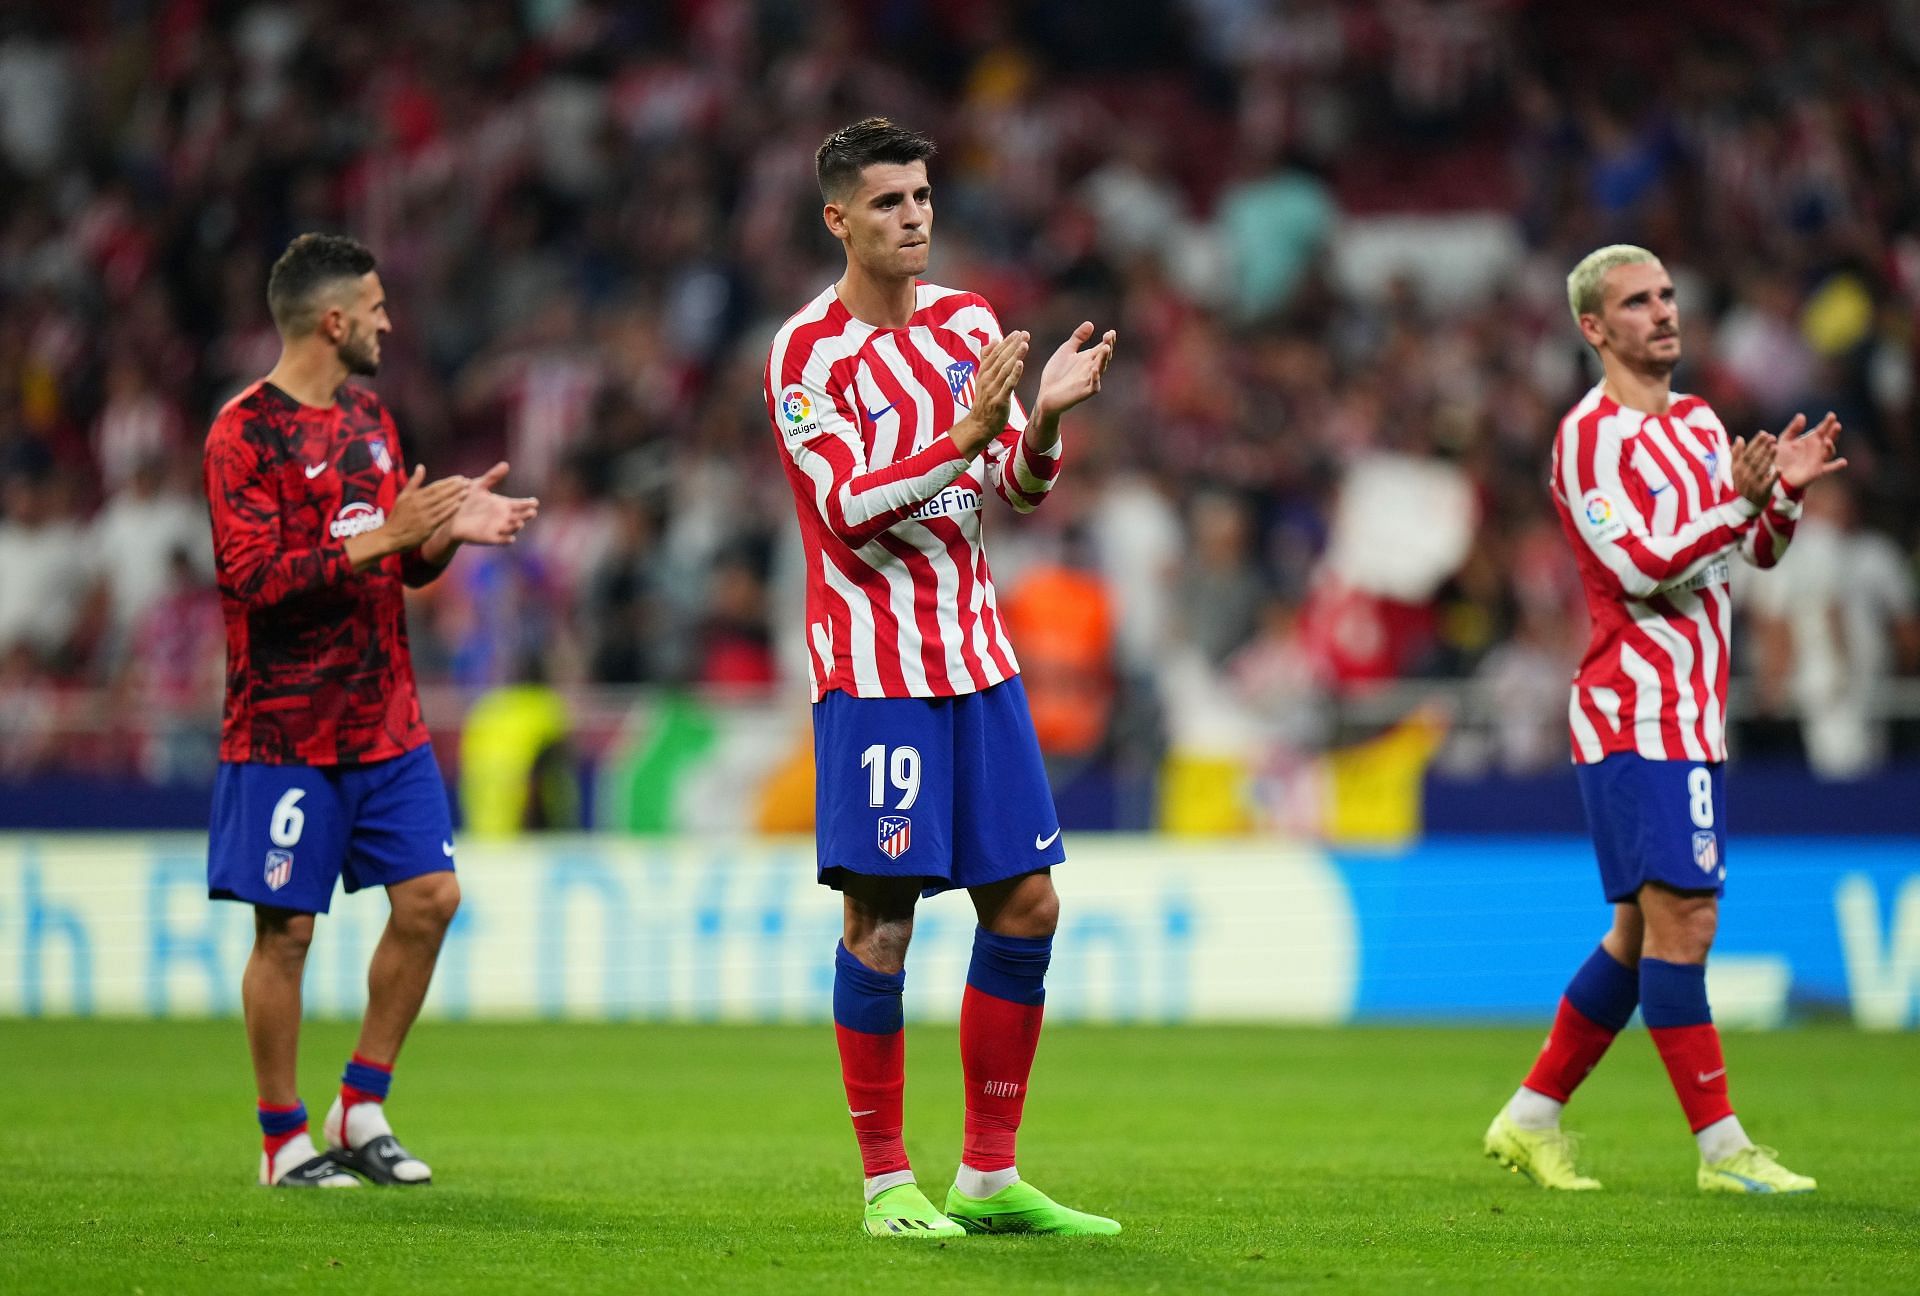 Atletico Madrid striker Alvaro Morata was in contact with Xavi Hernandez